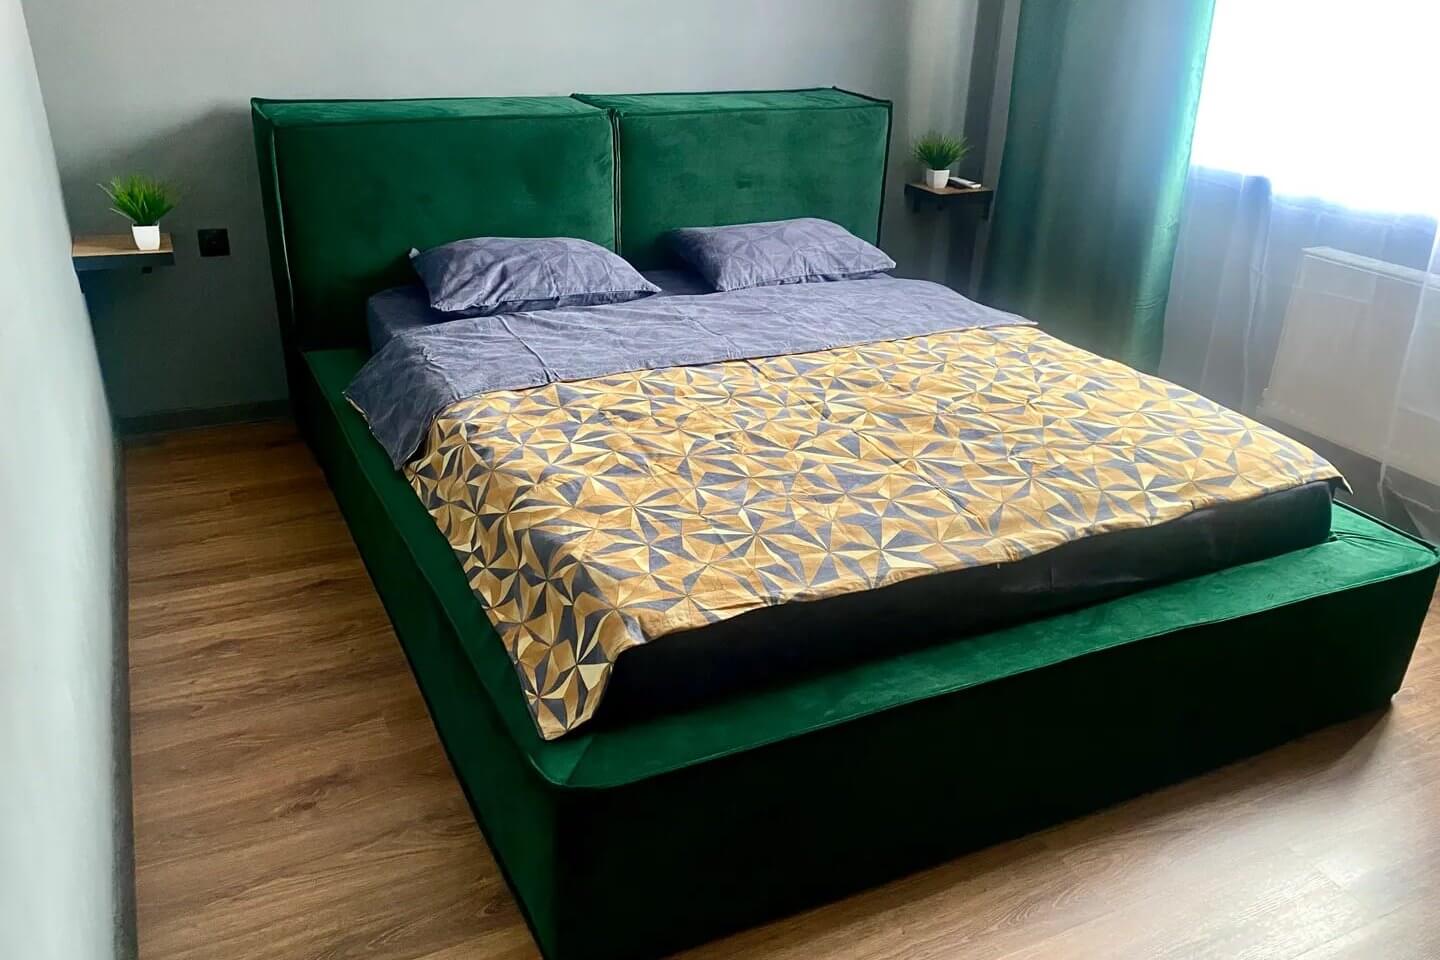 Основание кровати обшито зеленой бархатной тканью.